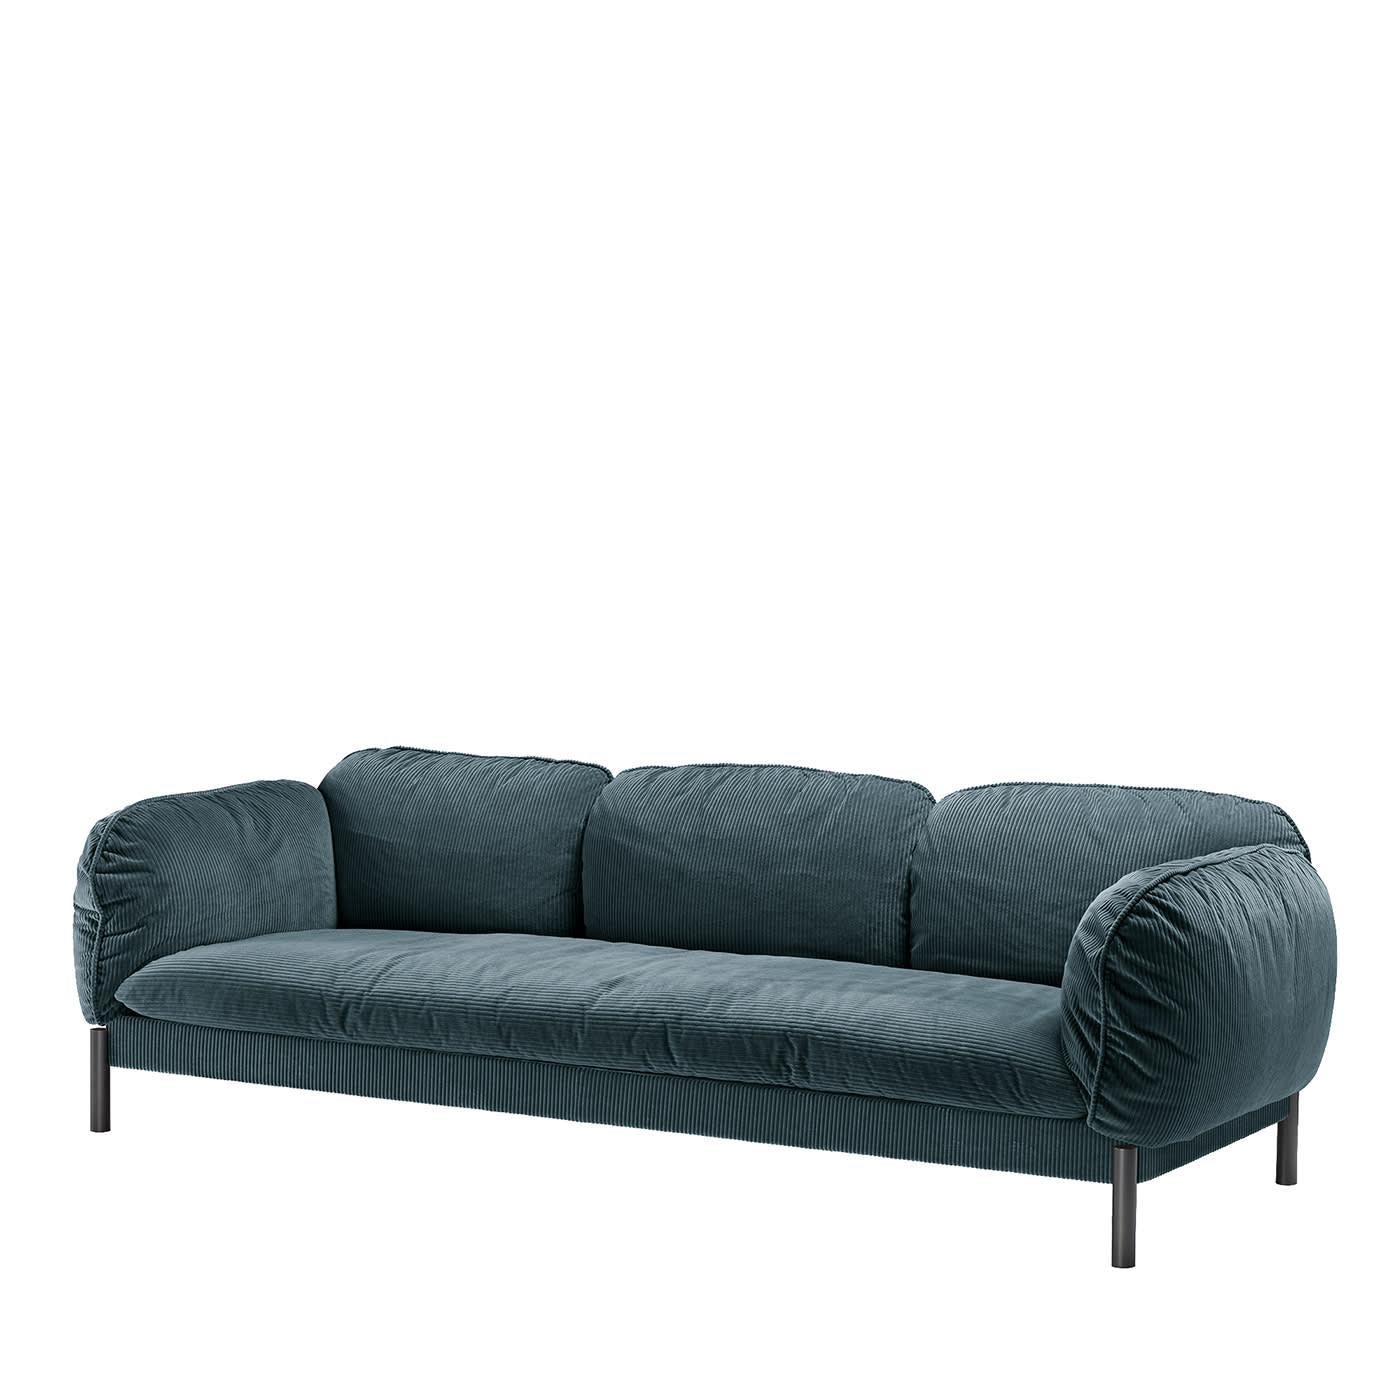 Lorenza Bozzoli wählte Cord als Polsterung für dieses exquisite Sofa, das dank seiner flauschigen Polsterung und dem weichen blauen Samtbezug zu Momenten puren Komforts einlädt. Er ist in den Farben Taupe oder Grün erhältlich und passt sich so am